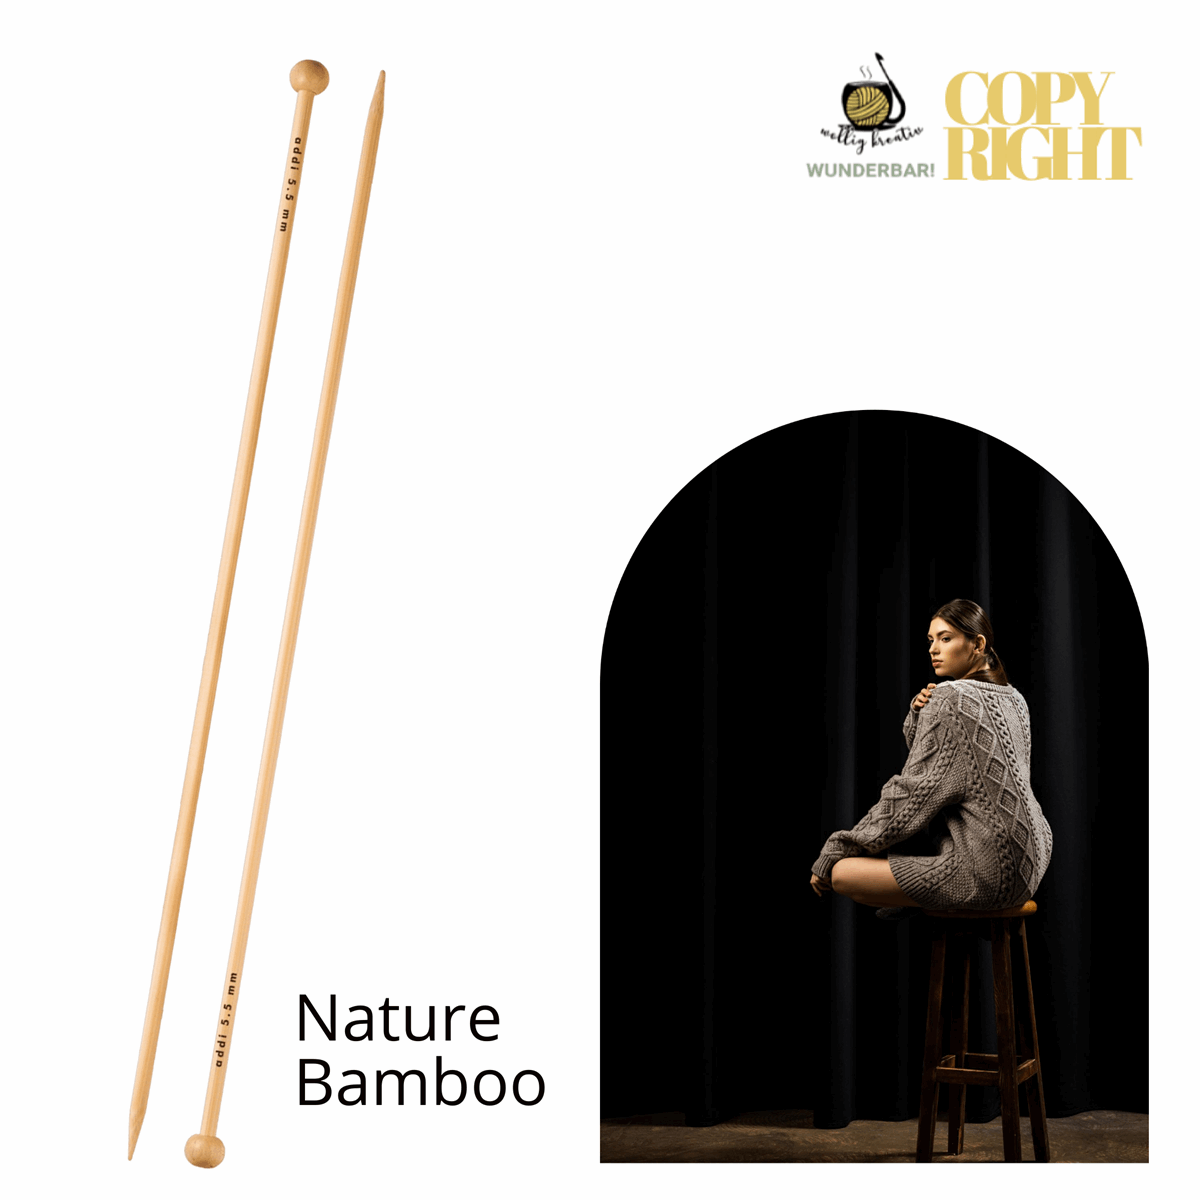 Addi, Nature Bamboo jacket knitting needle, 65007, size 4, length 25